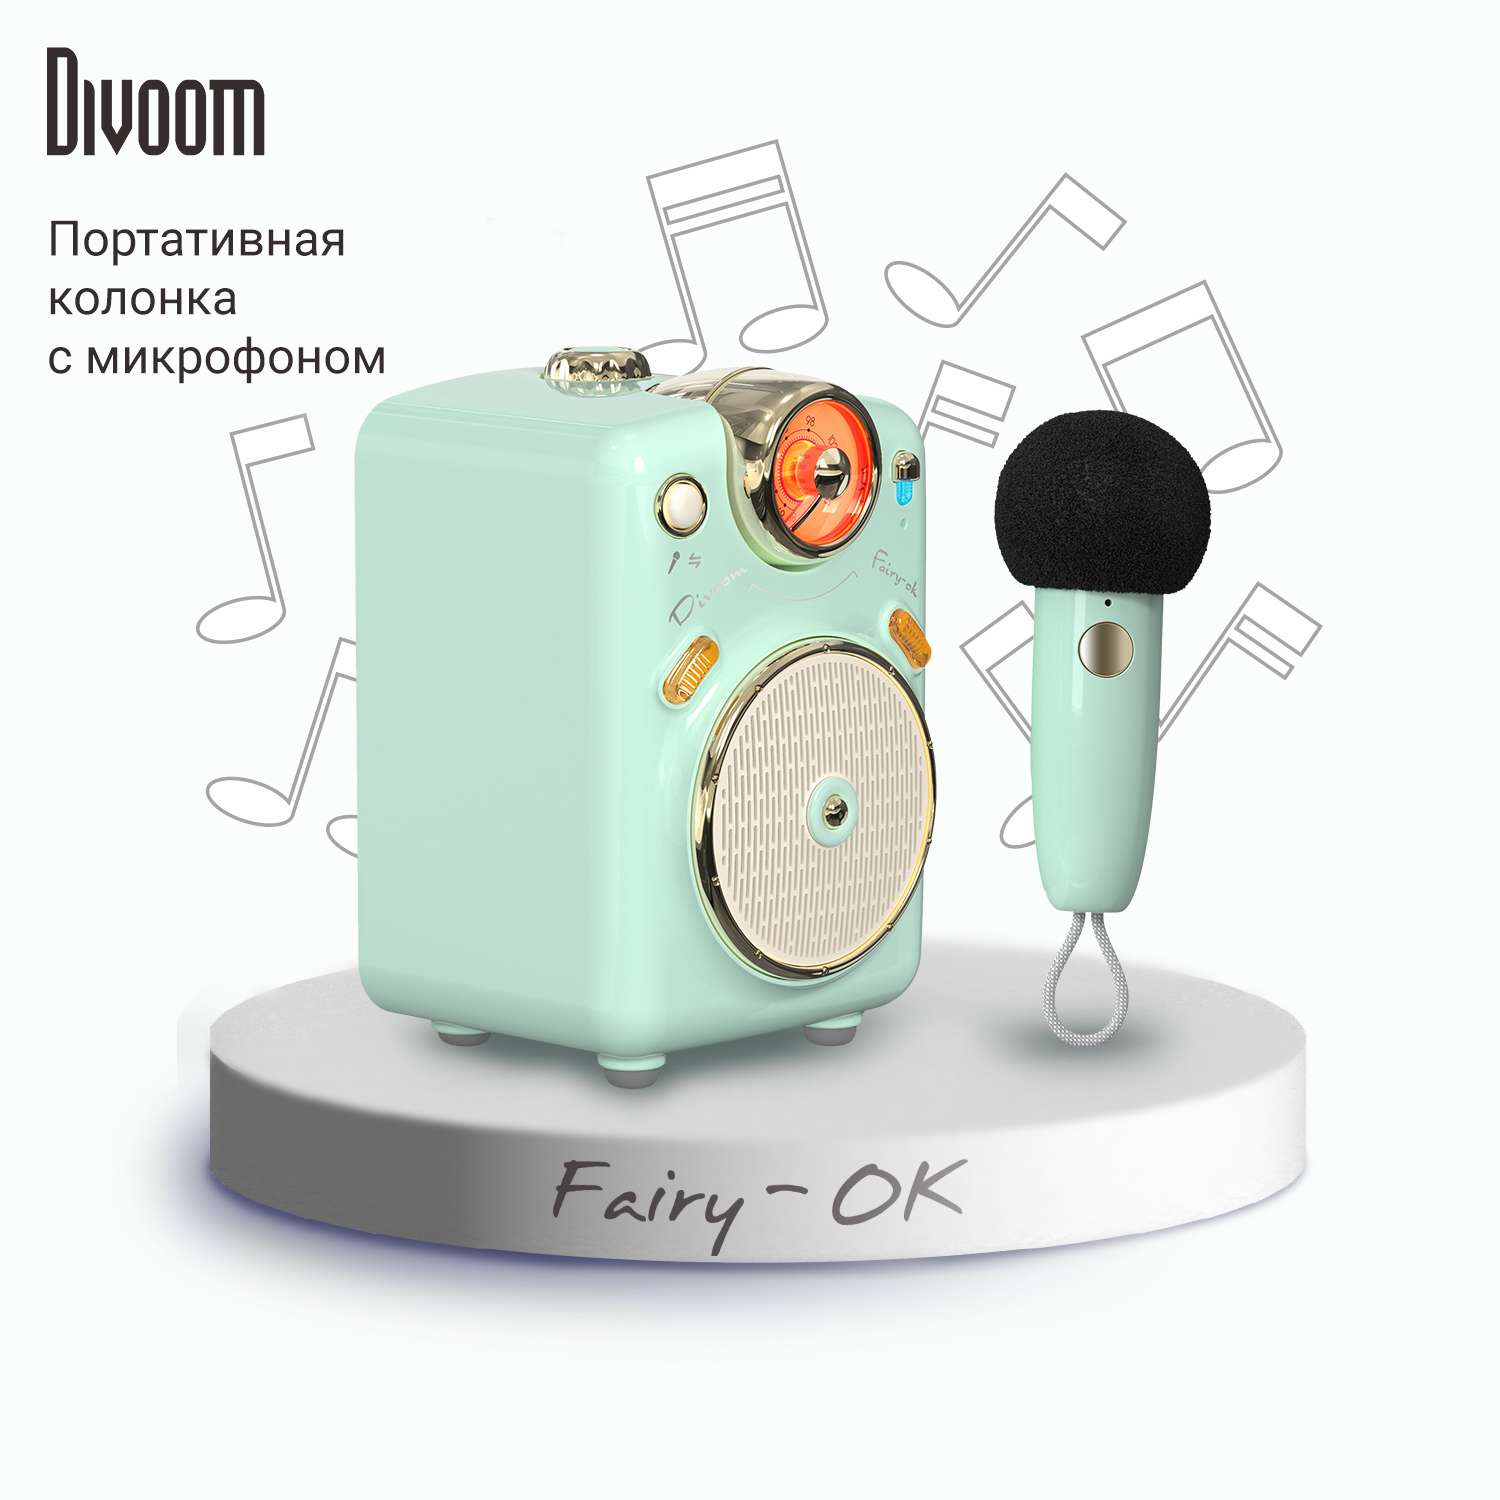 Беспроводная колонка DIVOOM портативная Fairy-Ok зеленая с микрофоном - фото 1